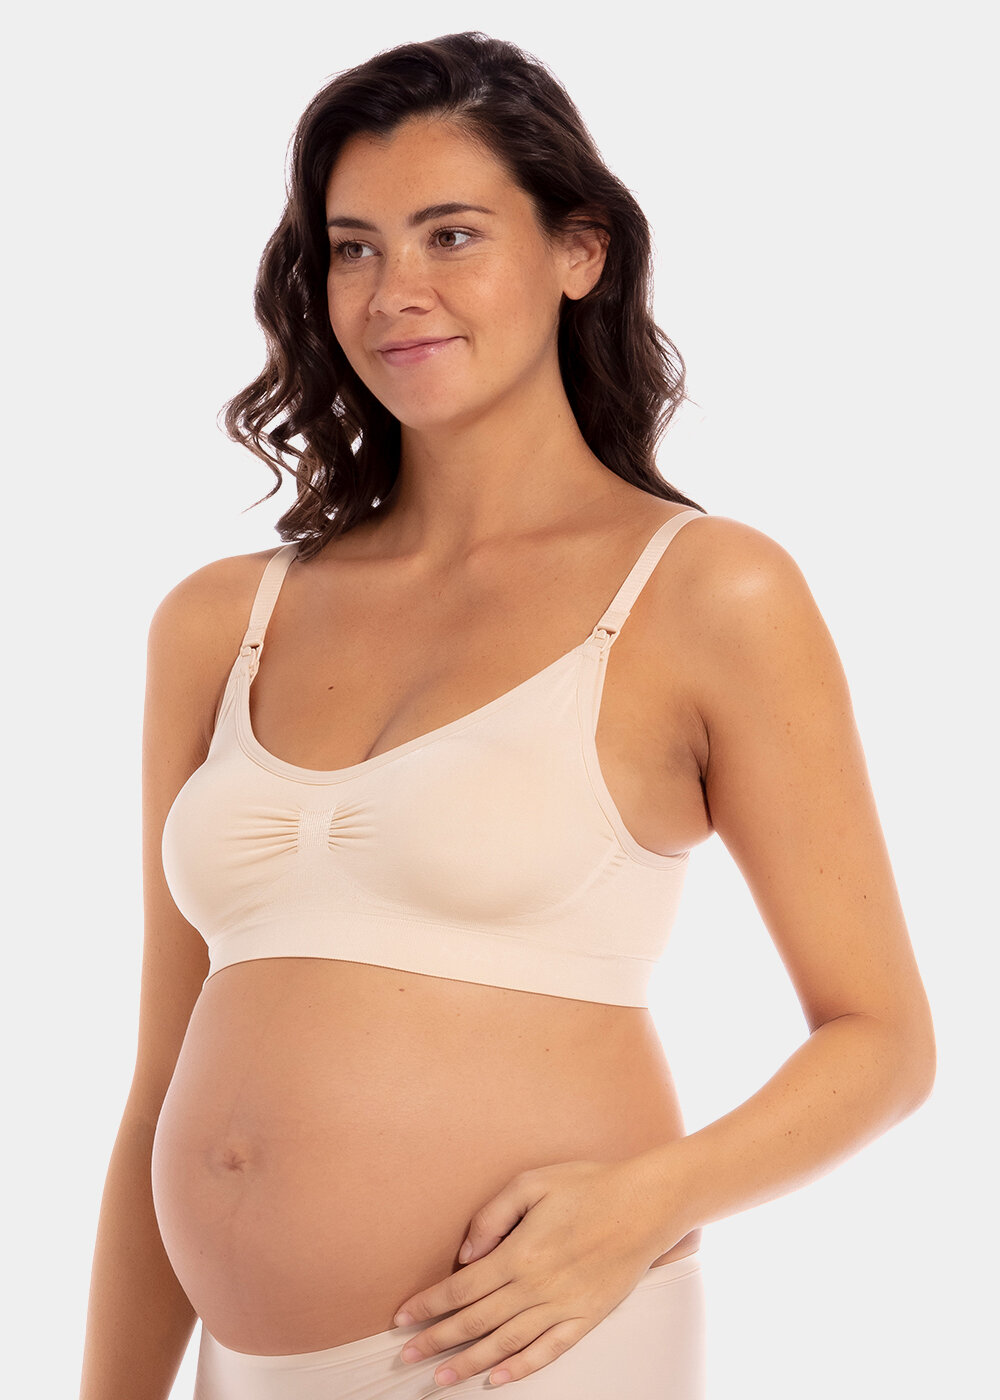 Medela maternity and nursing bra M White buy online